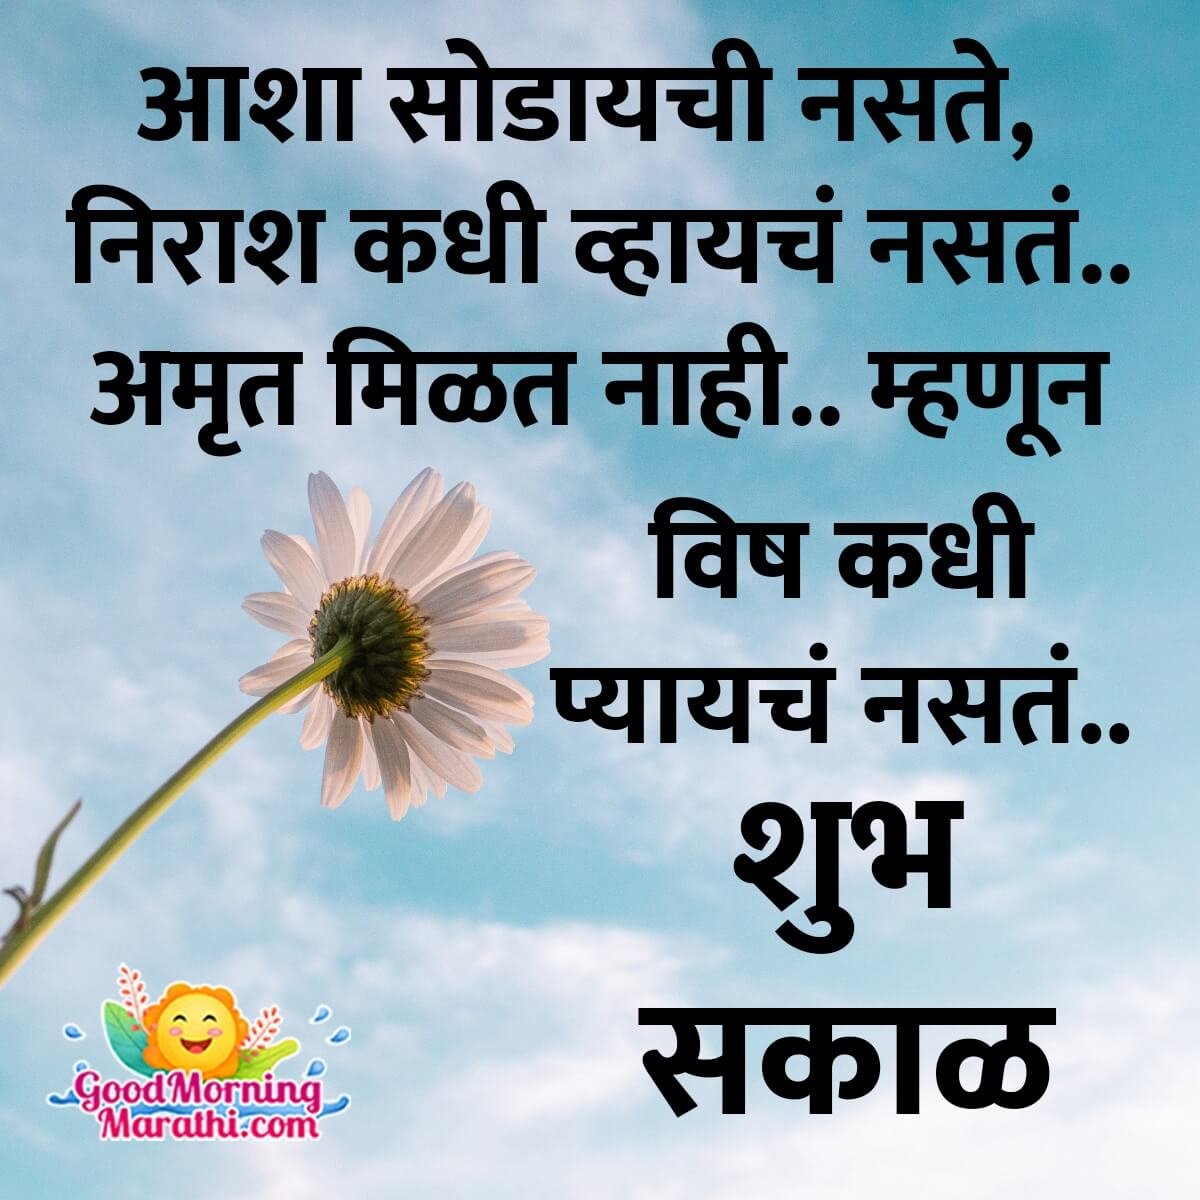 Top 999+ good morning quotes marathi images – Amazing Collection good morning quotes marathi images Full 4K